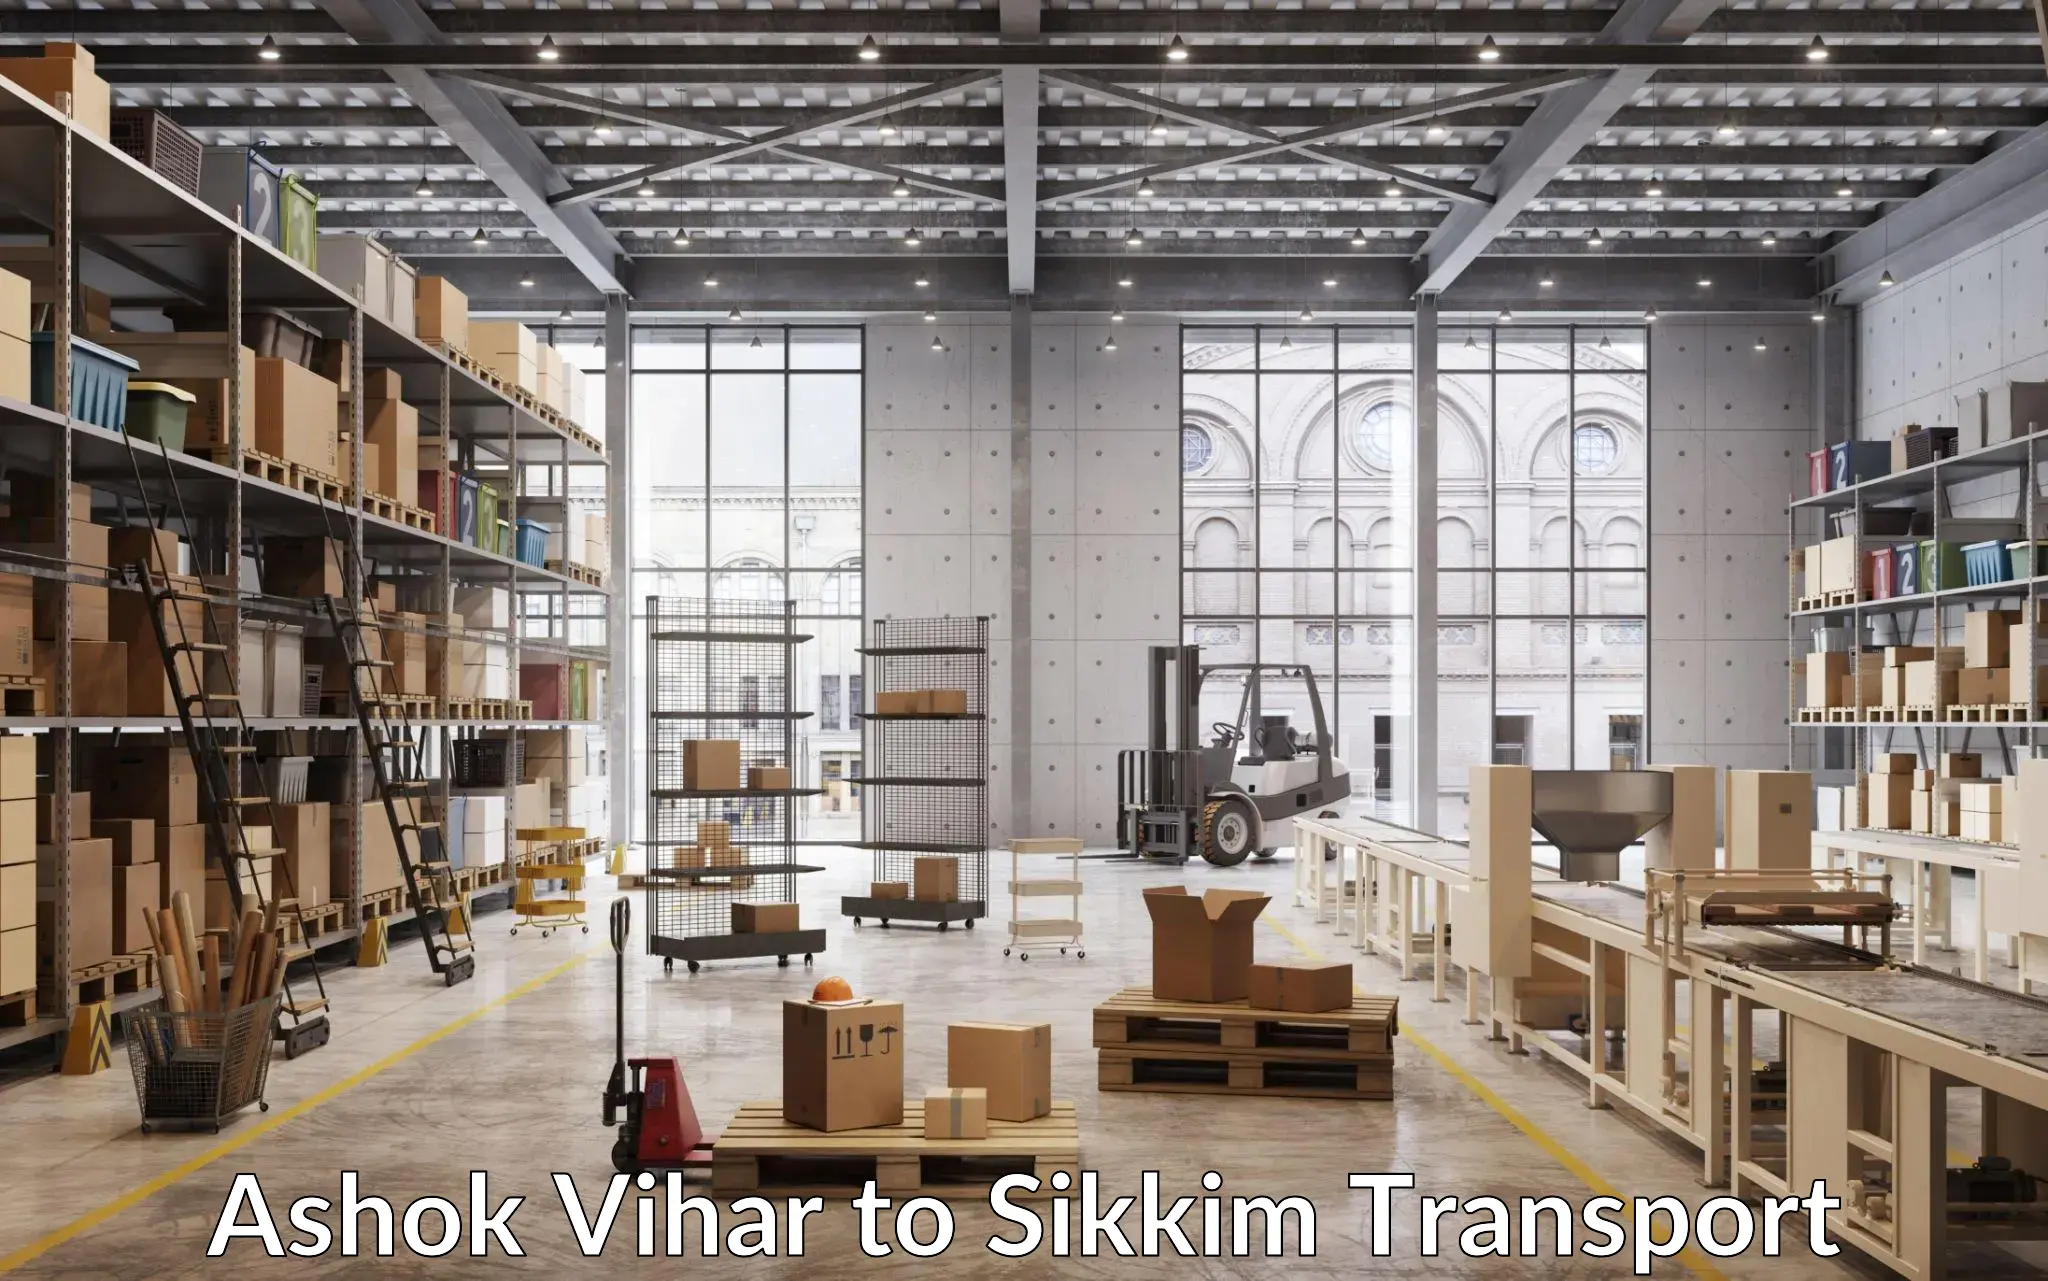 Transport in sharing Ashok Vihar to Pelling